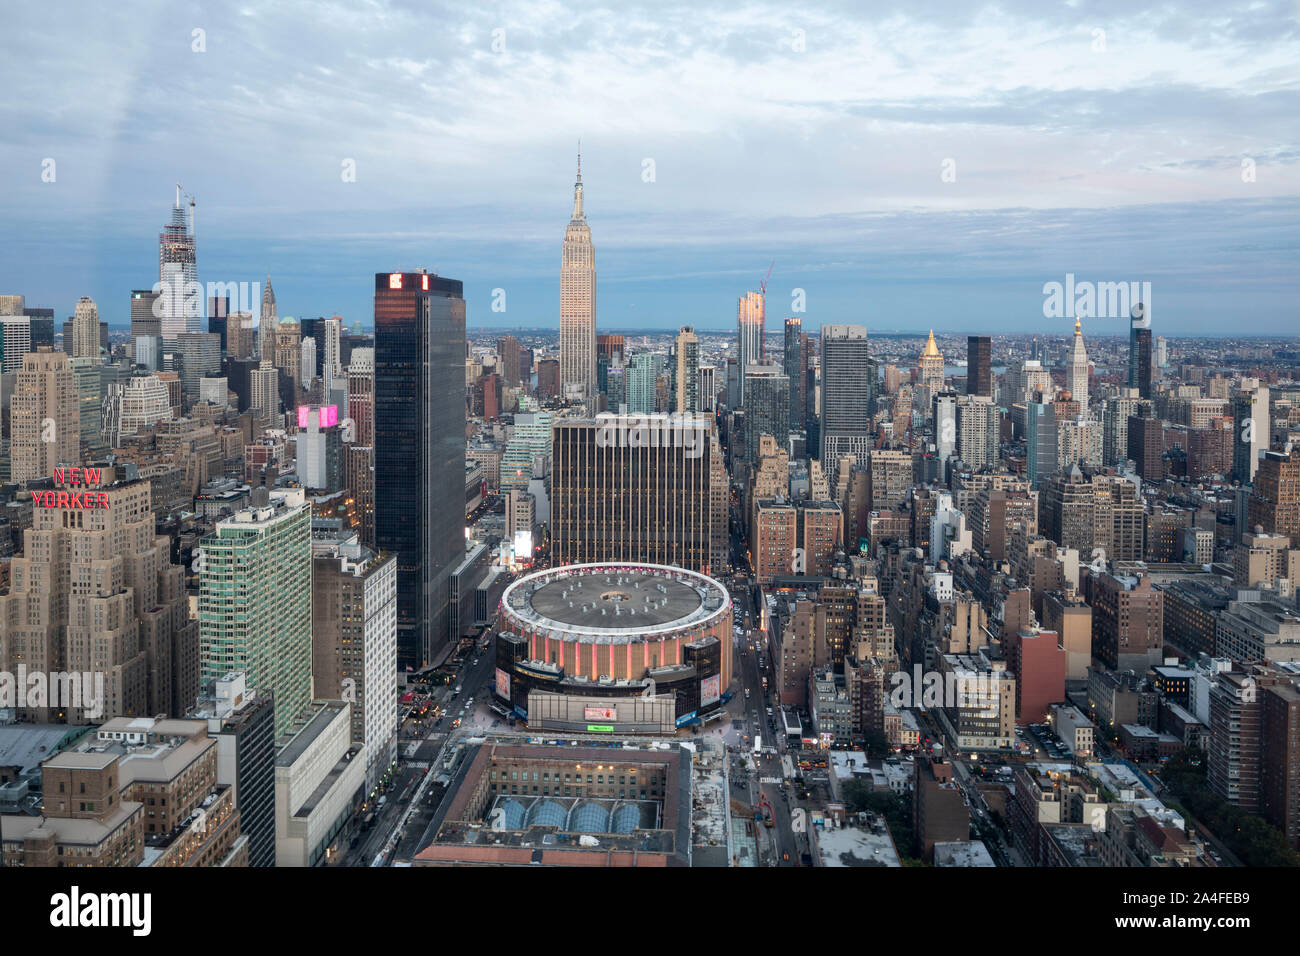 NEW YORK CITY, NY - Octubre 5, 2019: Vista aérea del Madison Square Garden en Manhattan, Ciudad de Nueva York, NY, EE.UU., mirando al oeste. Foto de stock